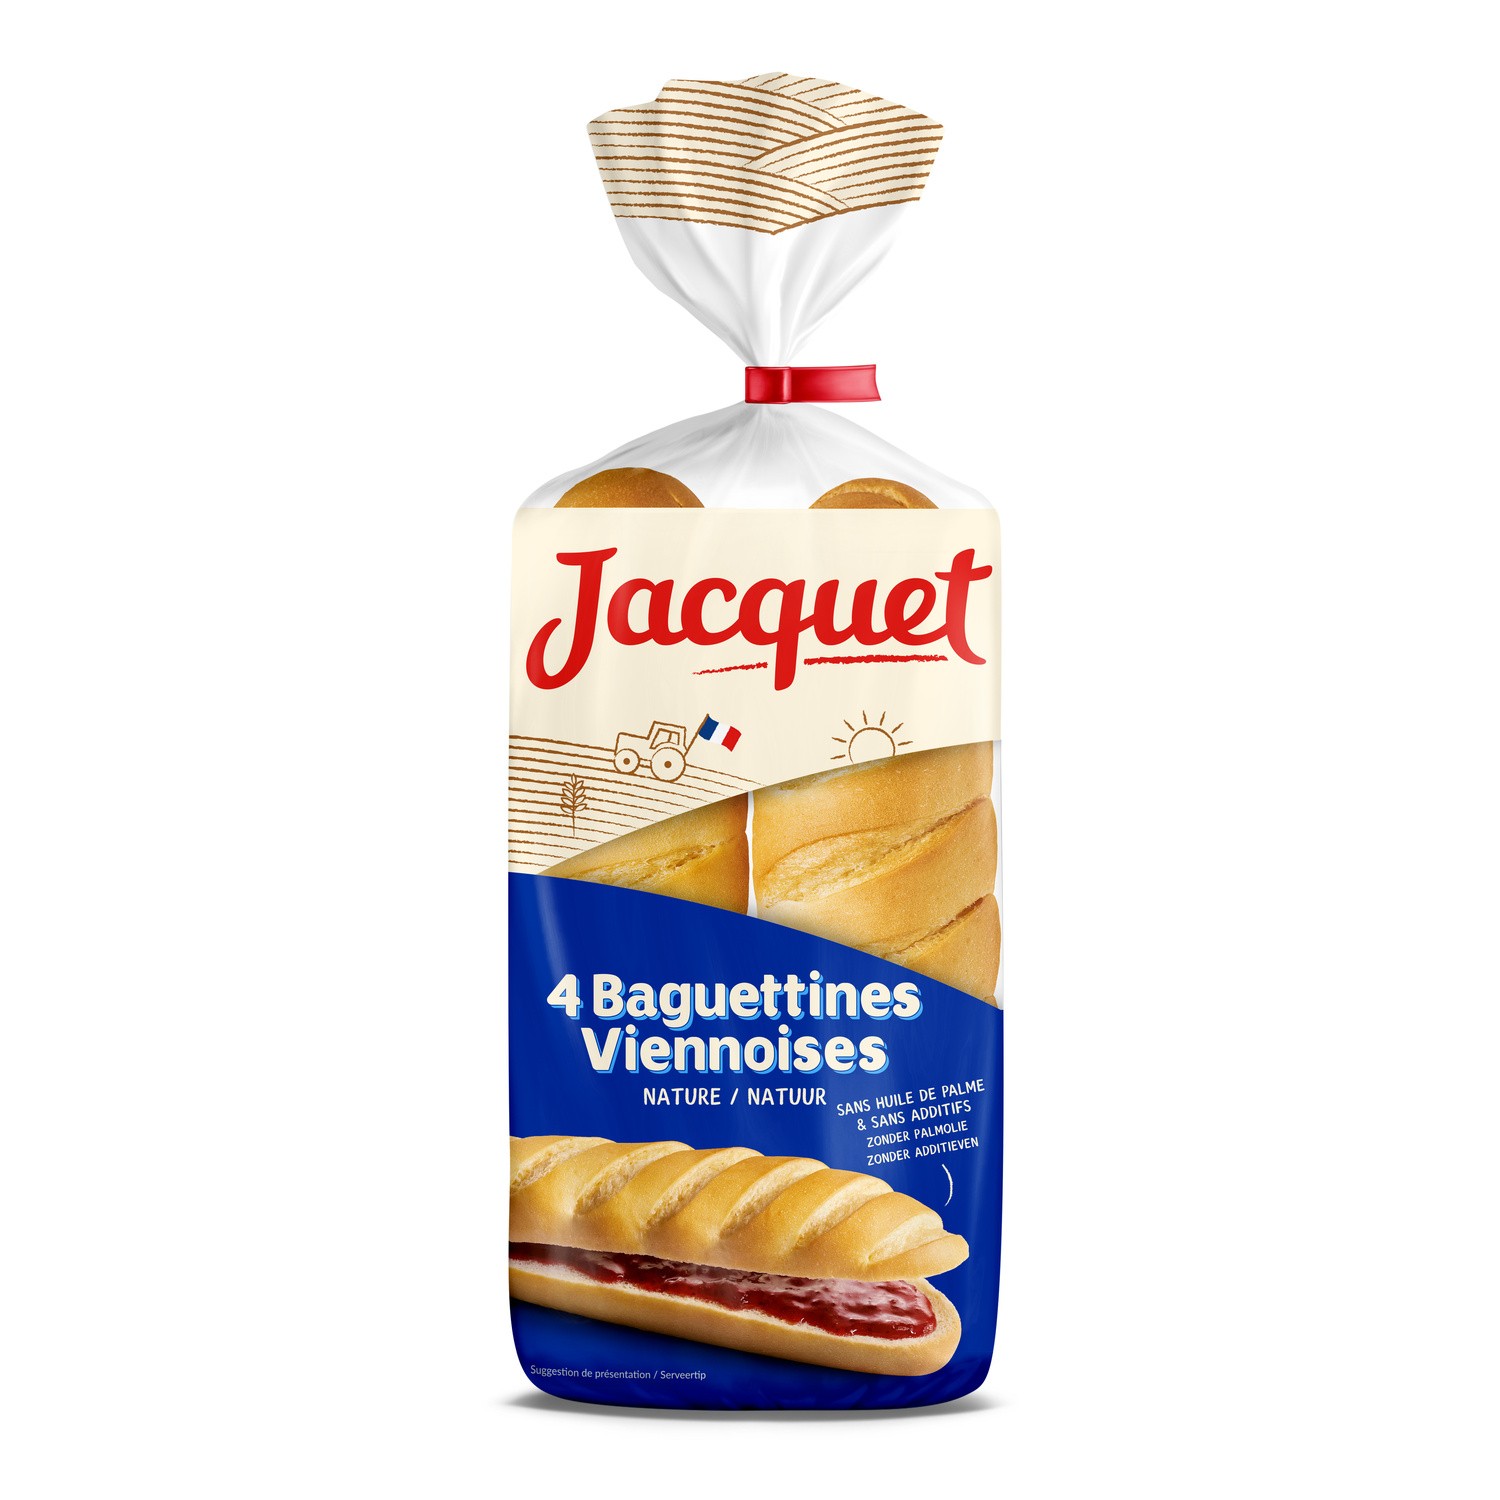 Pain de Mie complet sans sucres ajoutés - Jacquet - 550 g